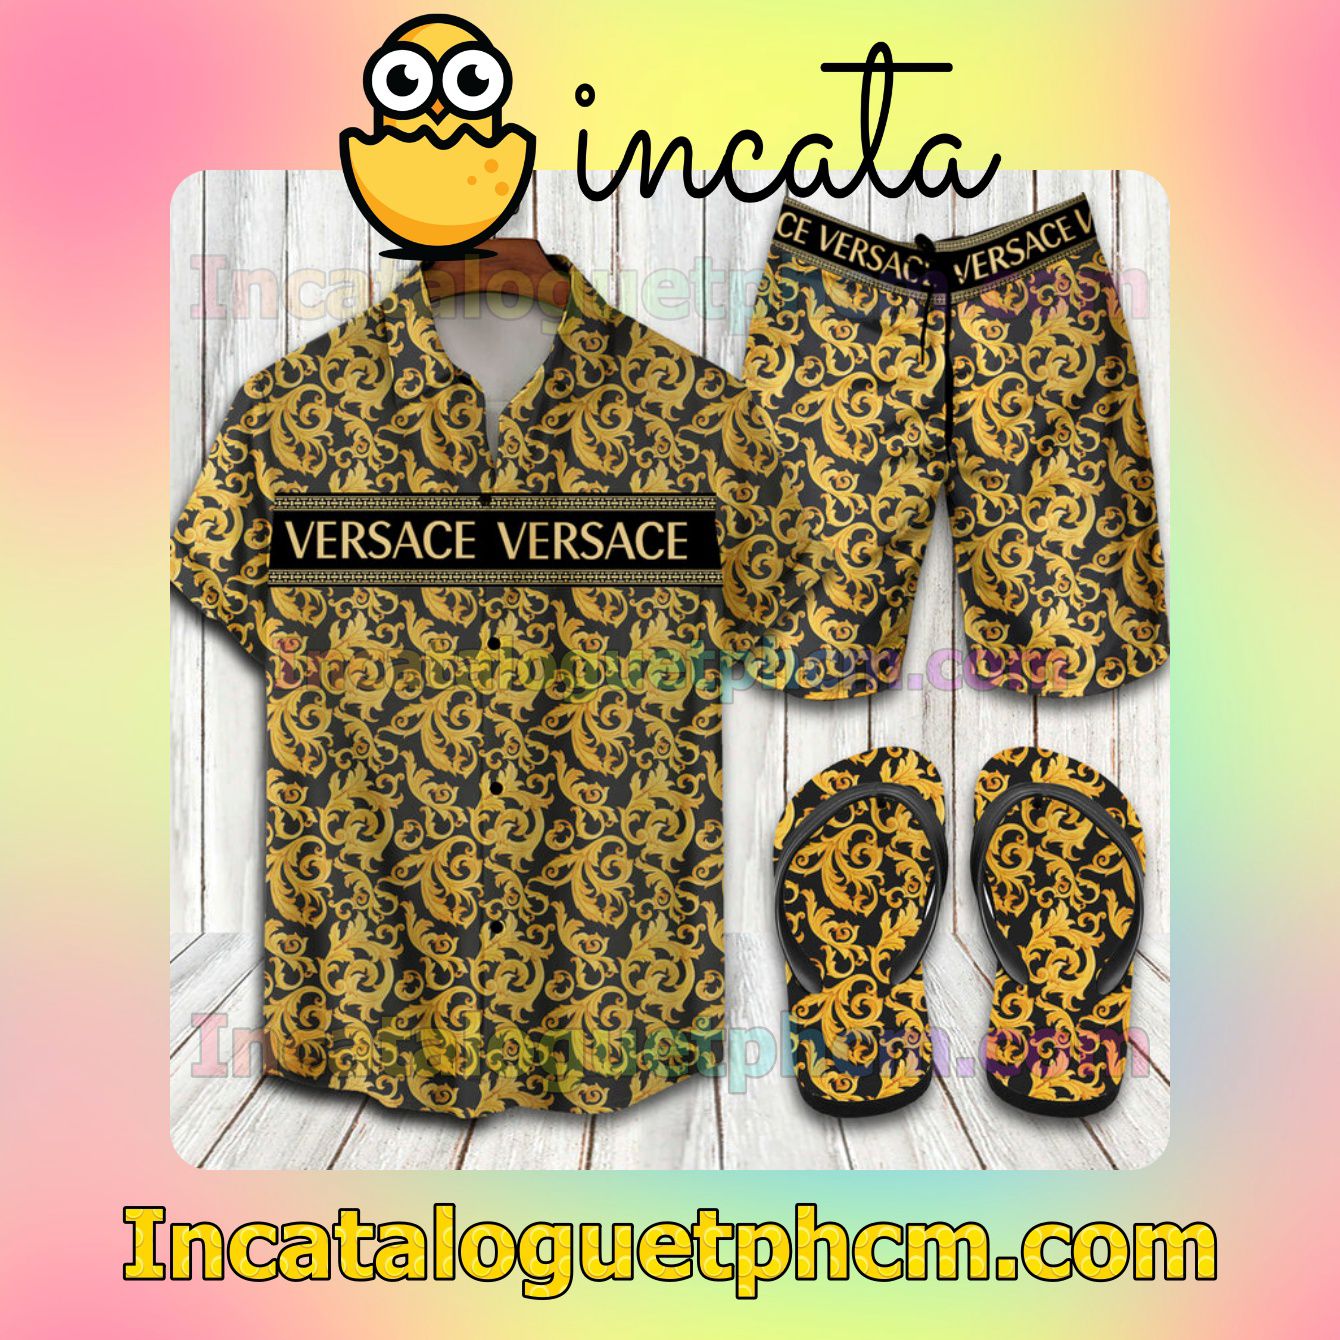 Versace Pattern Aloha Shirt And Shorts